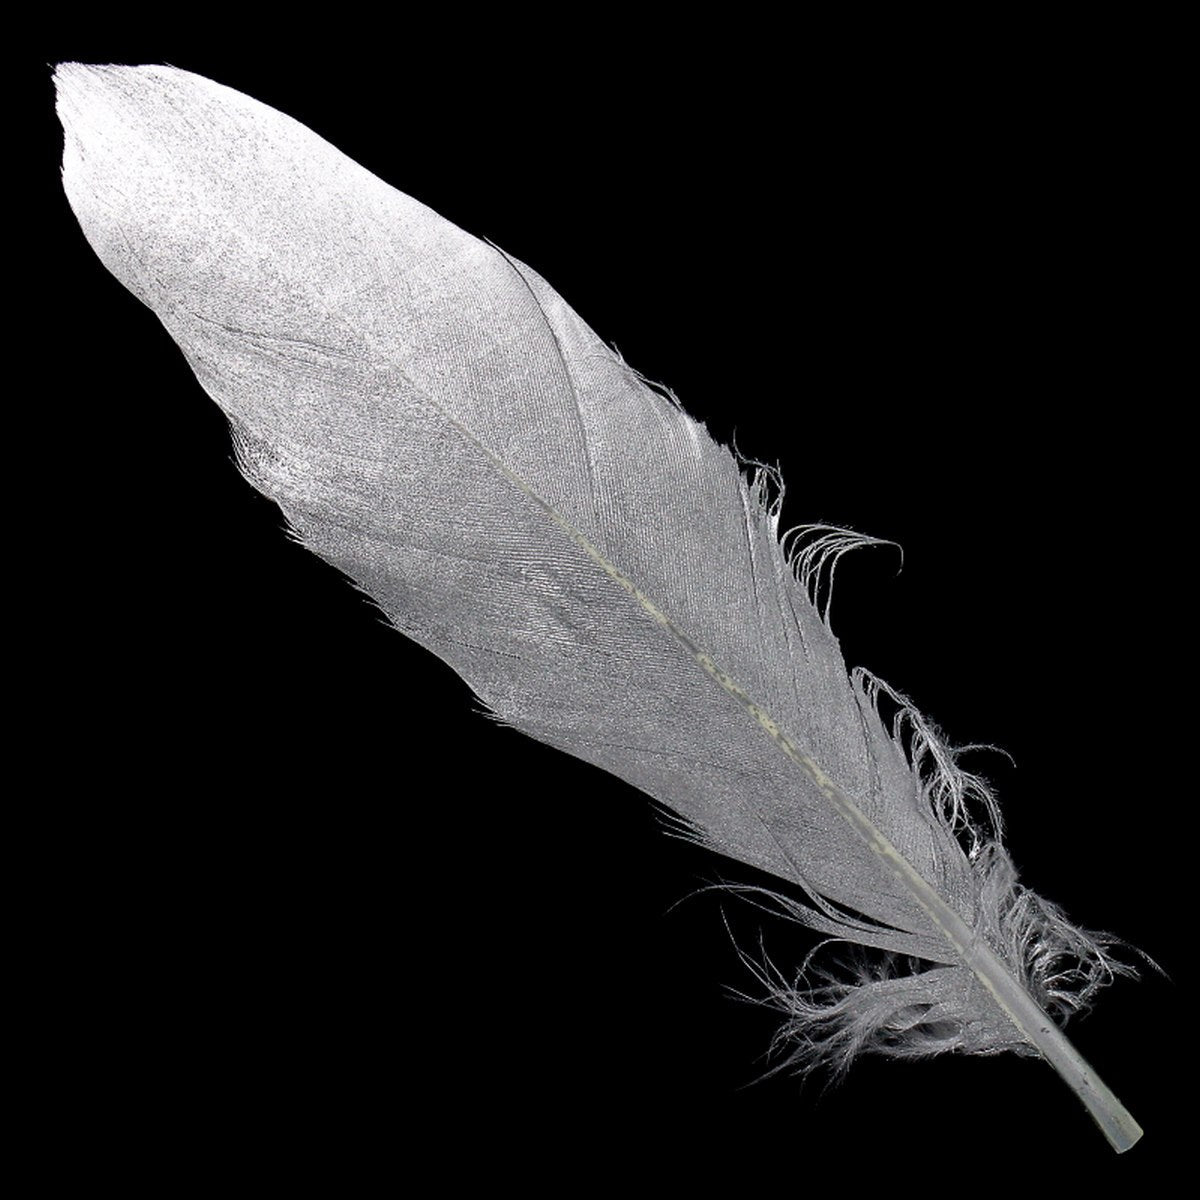 jags-mumbai Feather Feather Artificial Medium Silver 10pcs CFM-SR